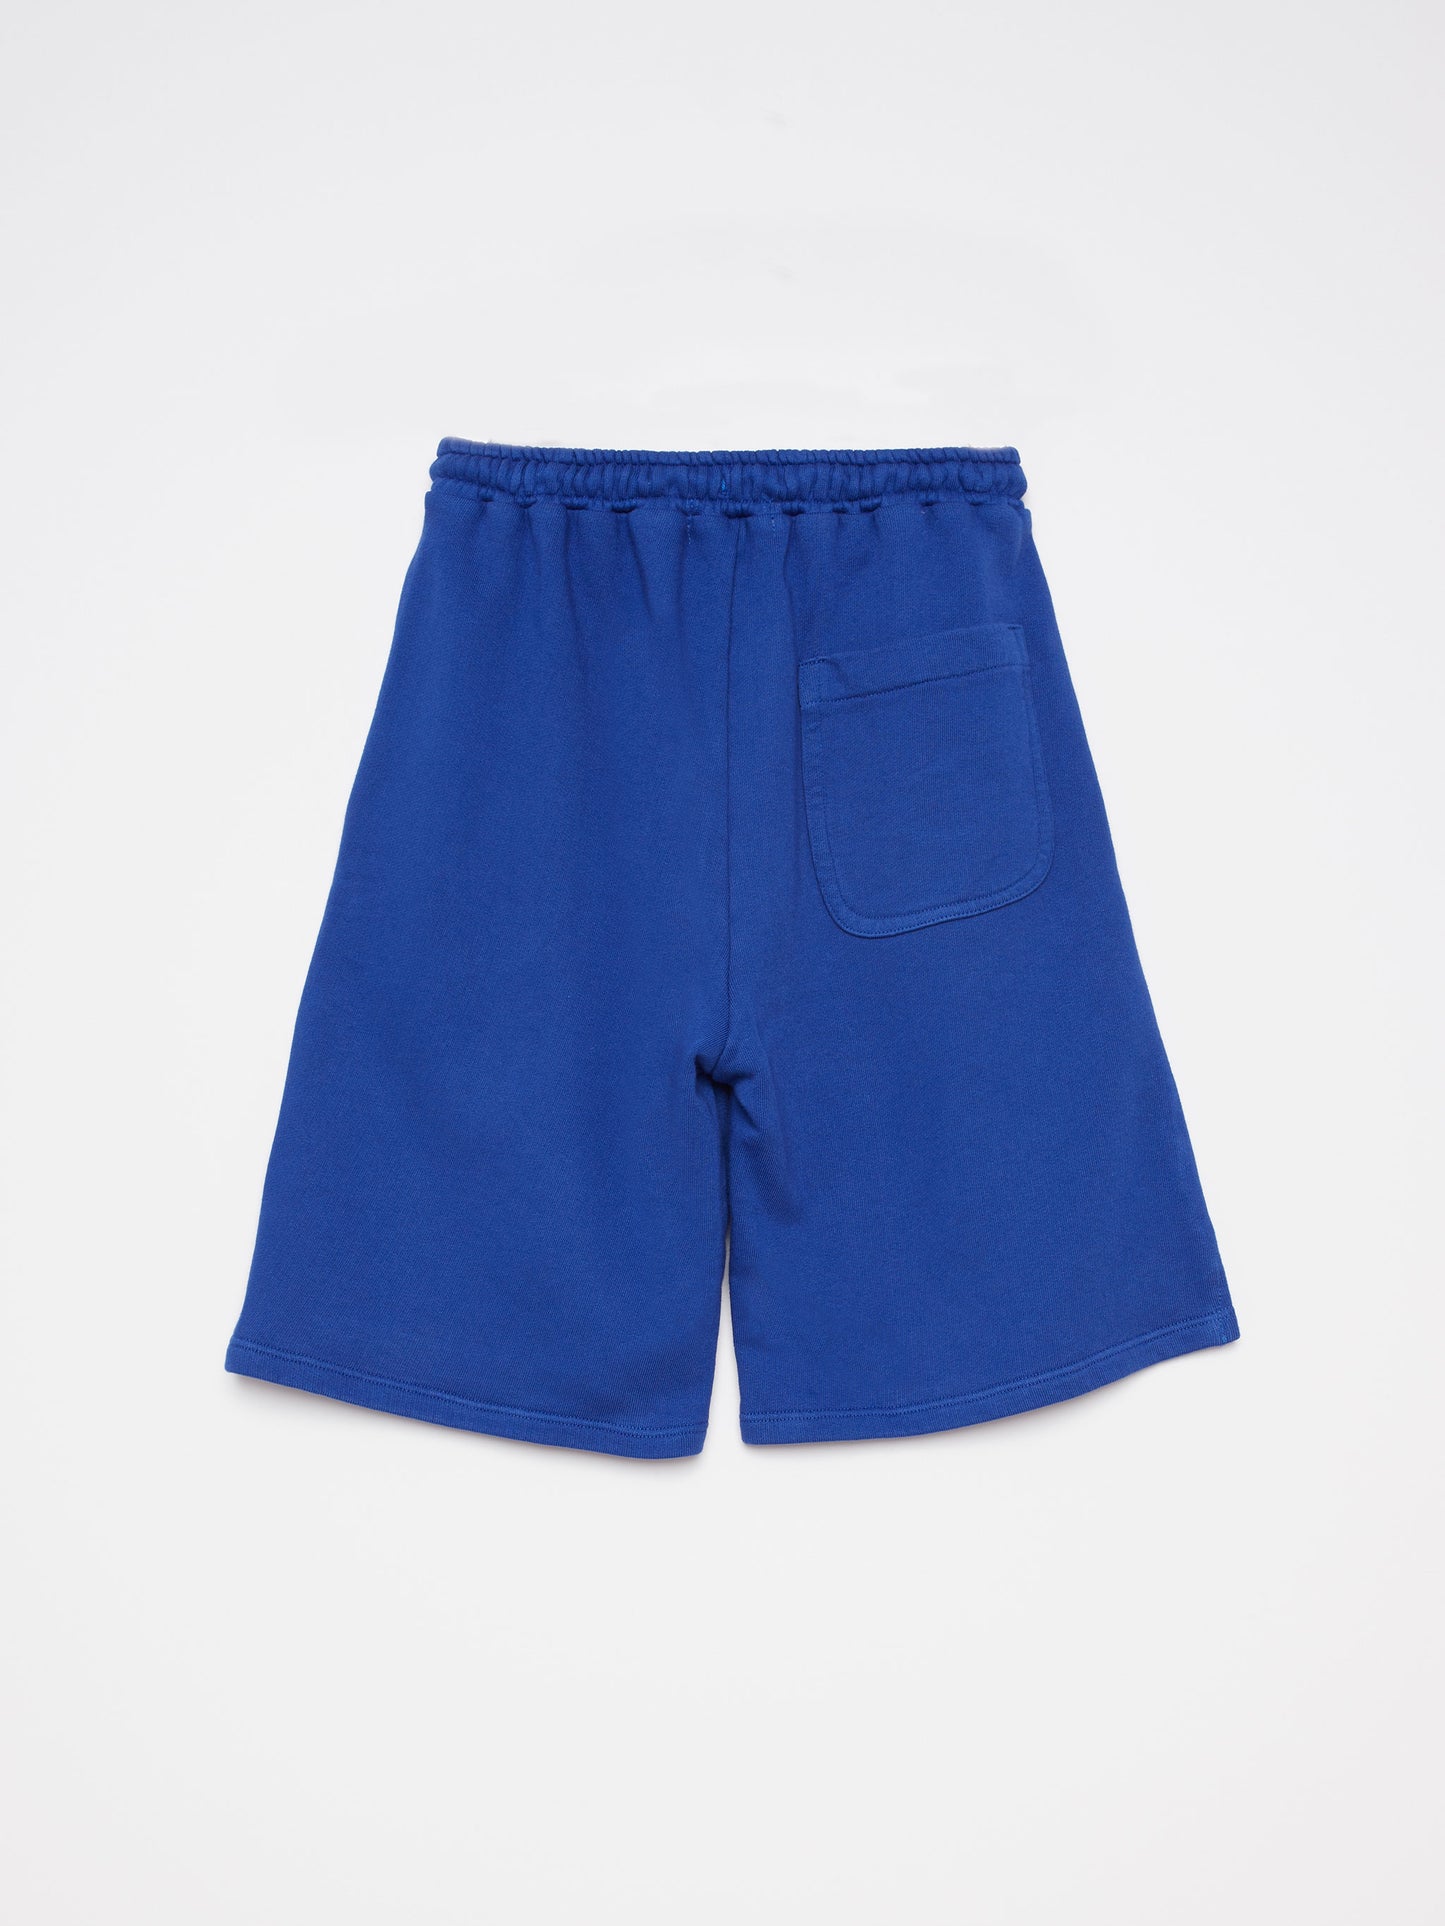 Shorts nº01 Ink Blue